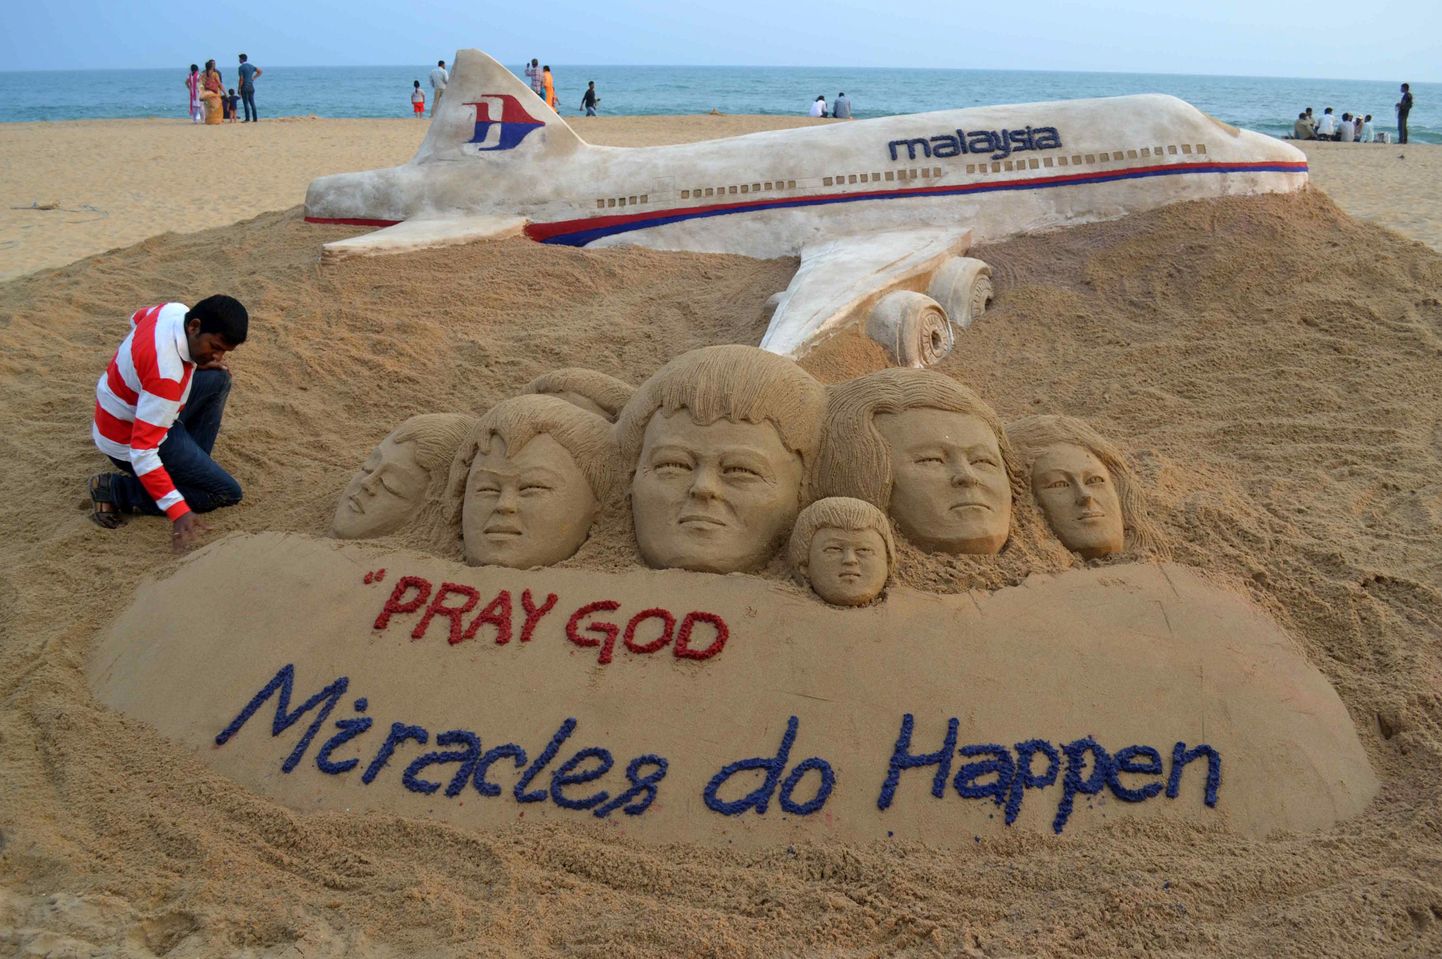 Malaysia Airlinesi kadunud lennu MH370 mälestuseks loodud liivaskulptuur